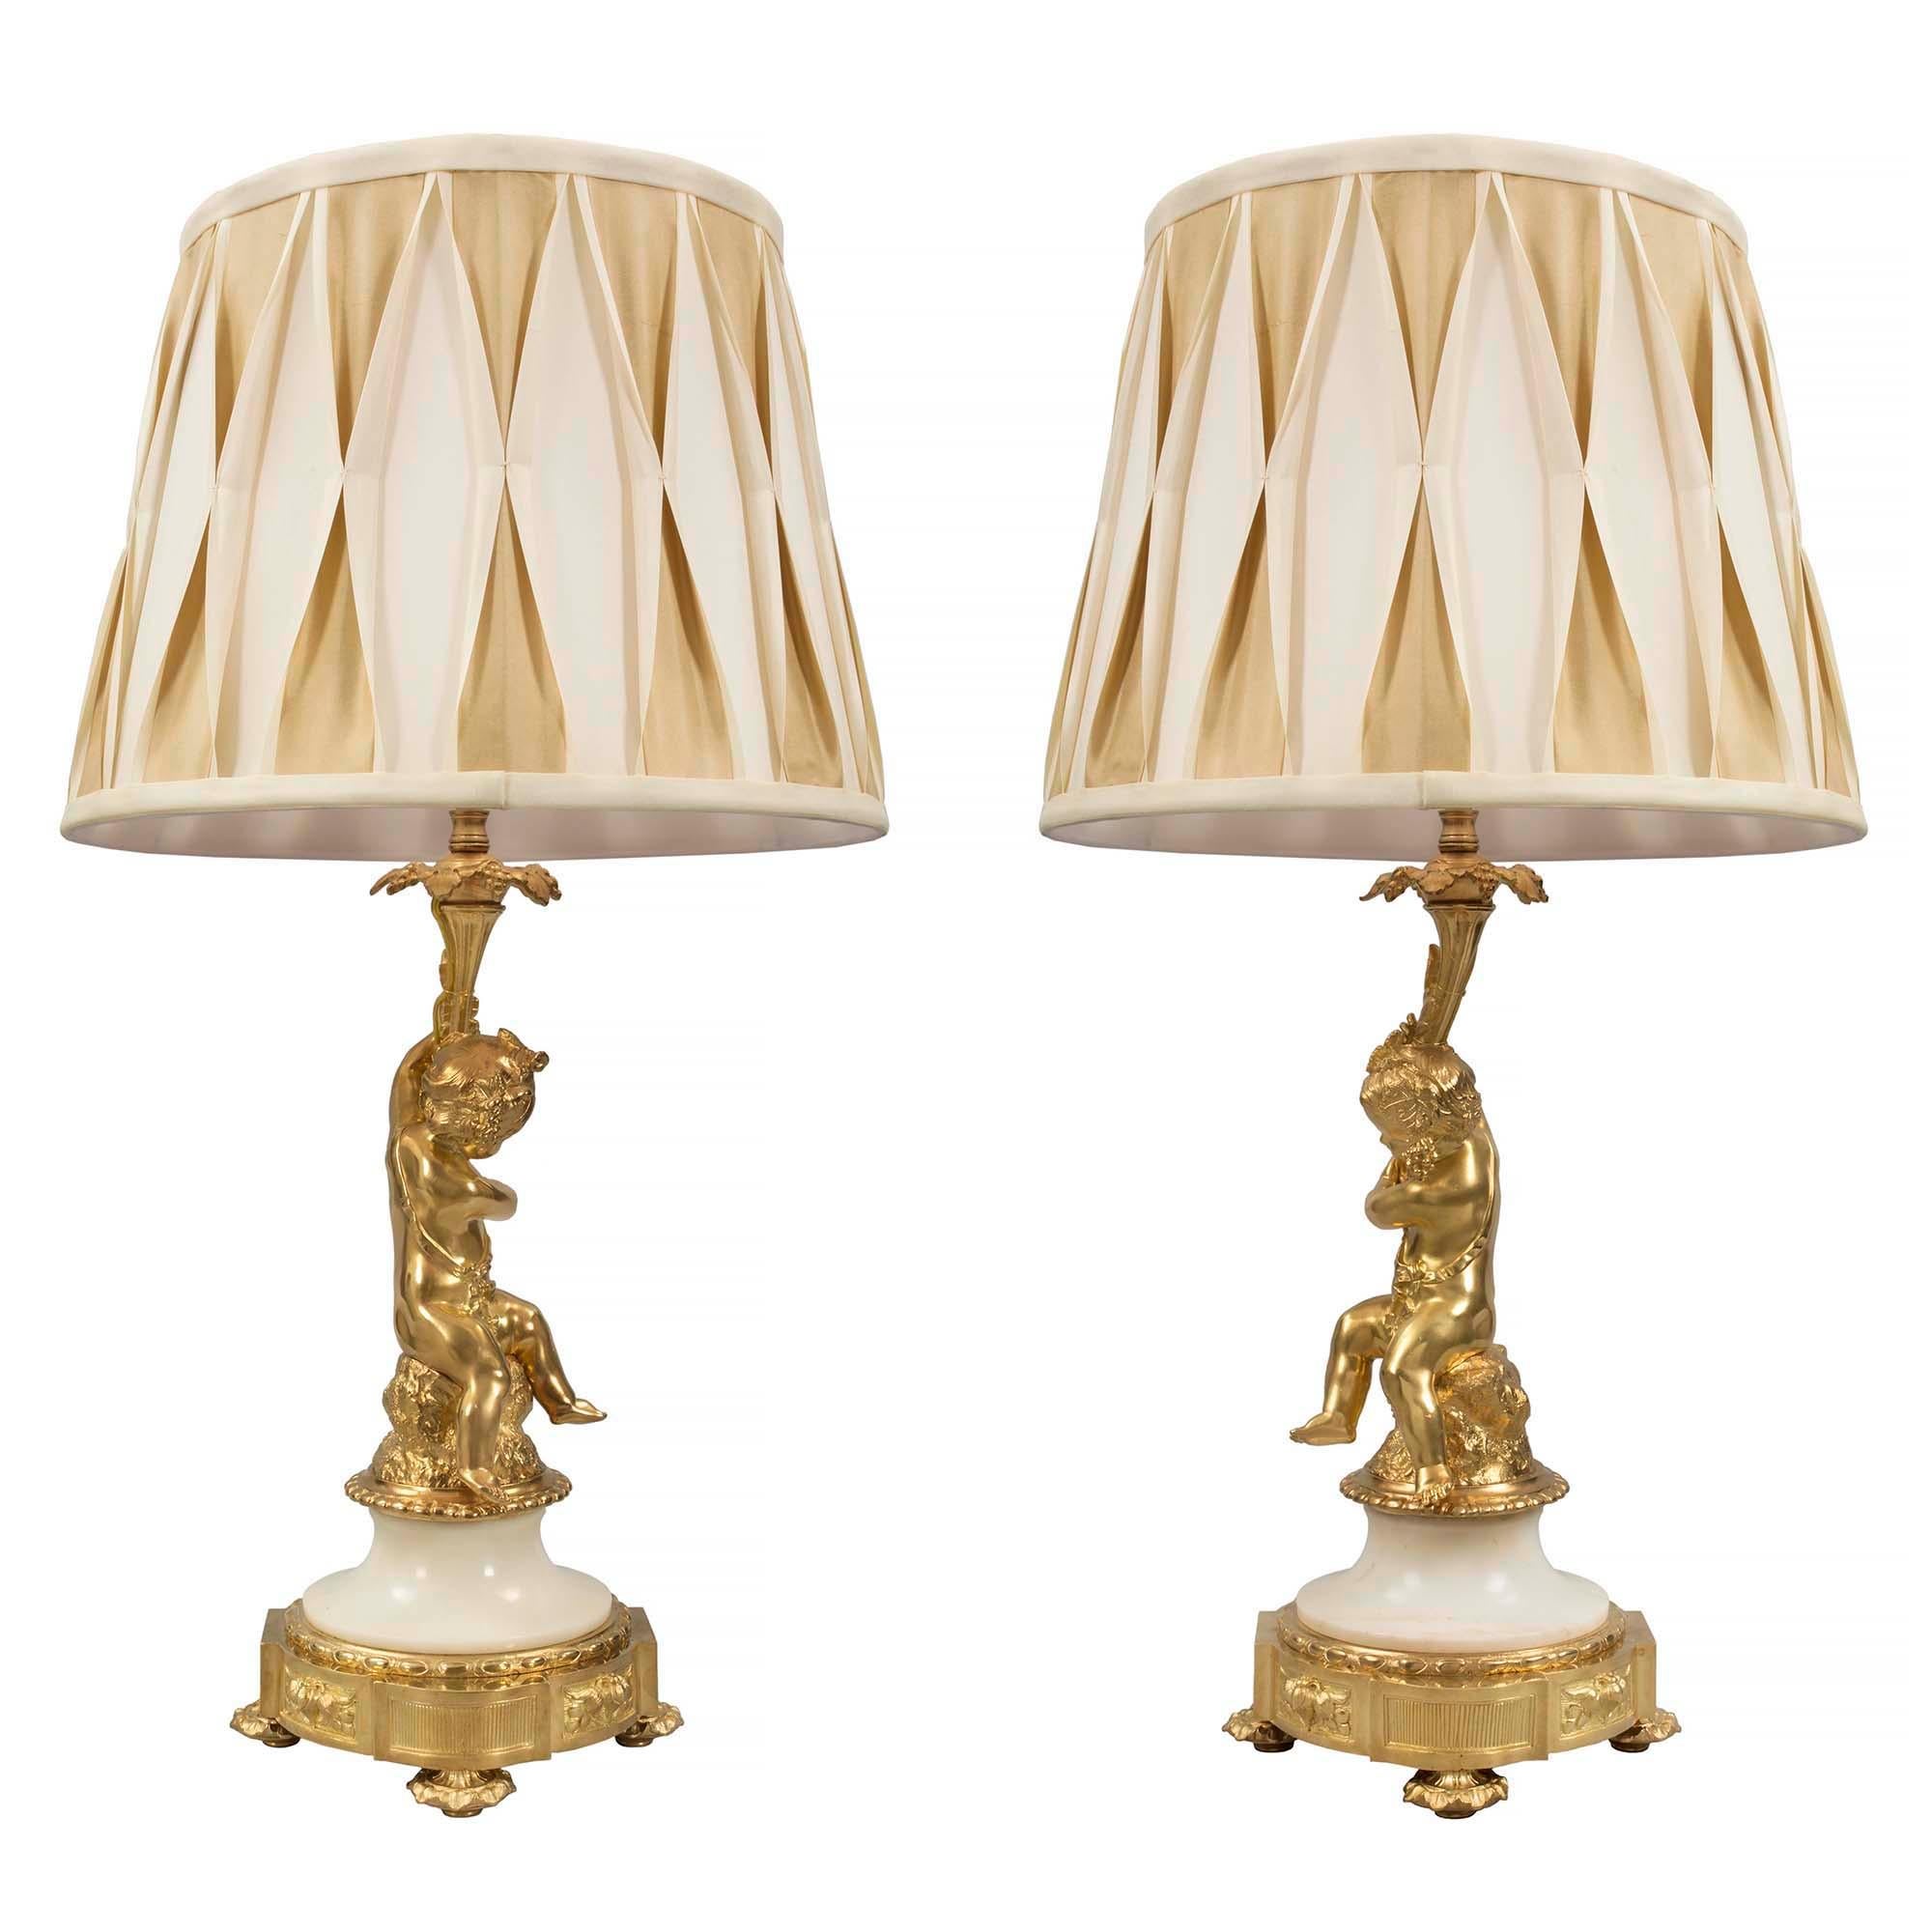 Ein wundervolles Paar skurriler französischer Lampen aus dem 19. Jahrhundert im Stil Louis XVI. aus Ormolu und Marmor. Jede Leuchte steht auf einem mit Blattwerk verzierten Topie-Fuß unterhalb des runden Sockels mit vorspringenden rechteckigen